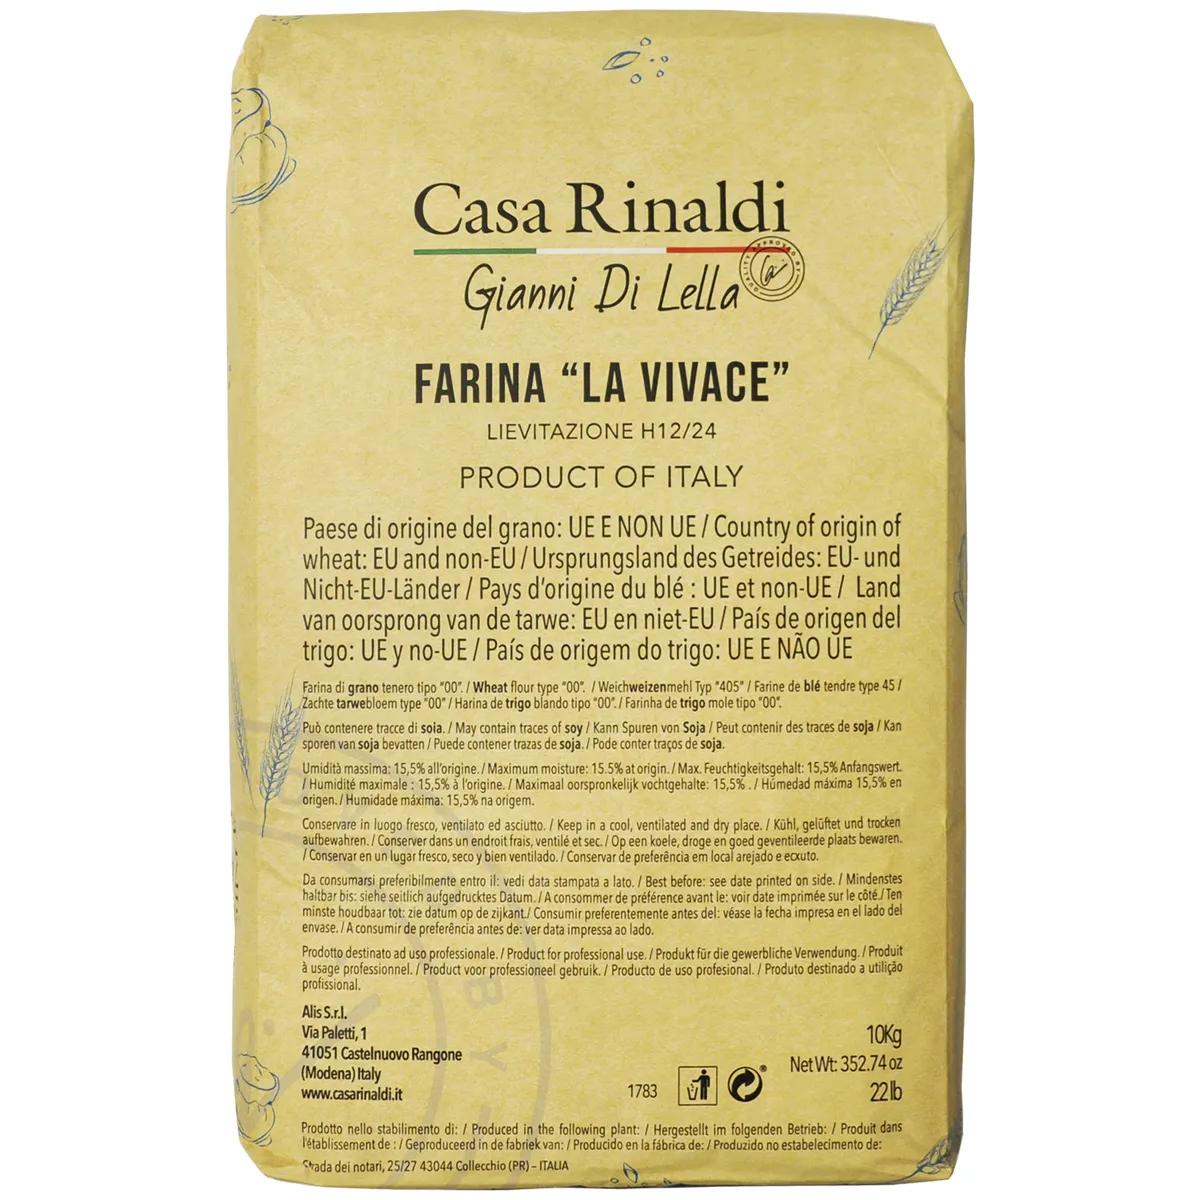 Мука Casa Rinaldi пшеничная из мягких сортов пшеницы типа 00 Farina la vivace, 10 кг., бумажная упаковка